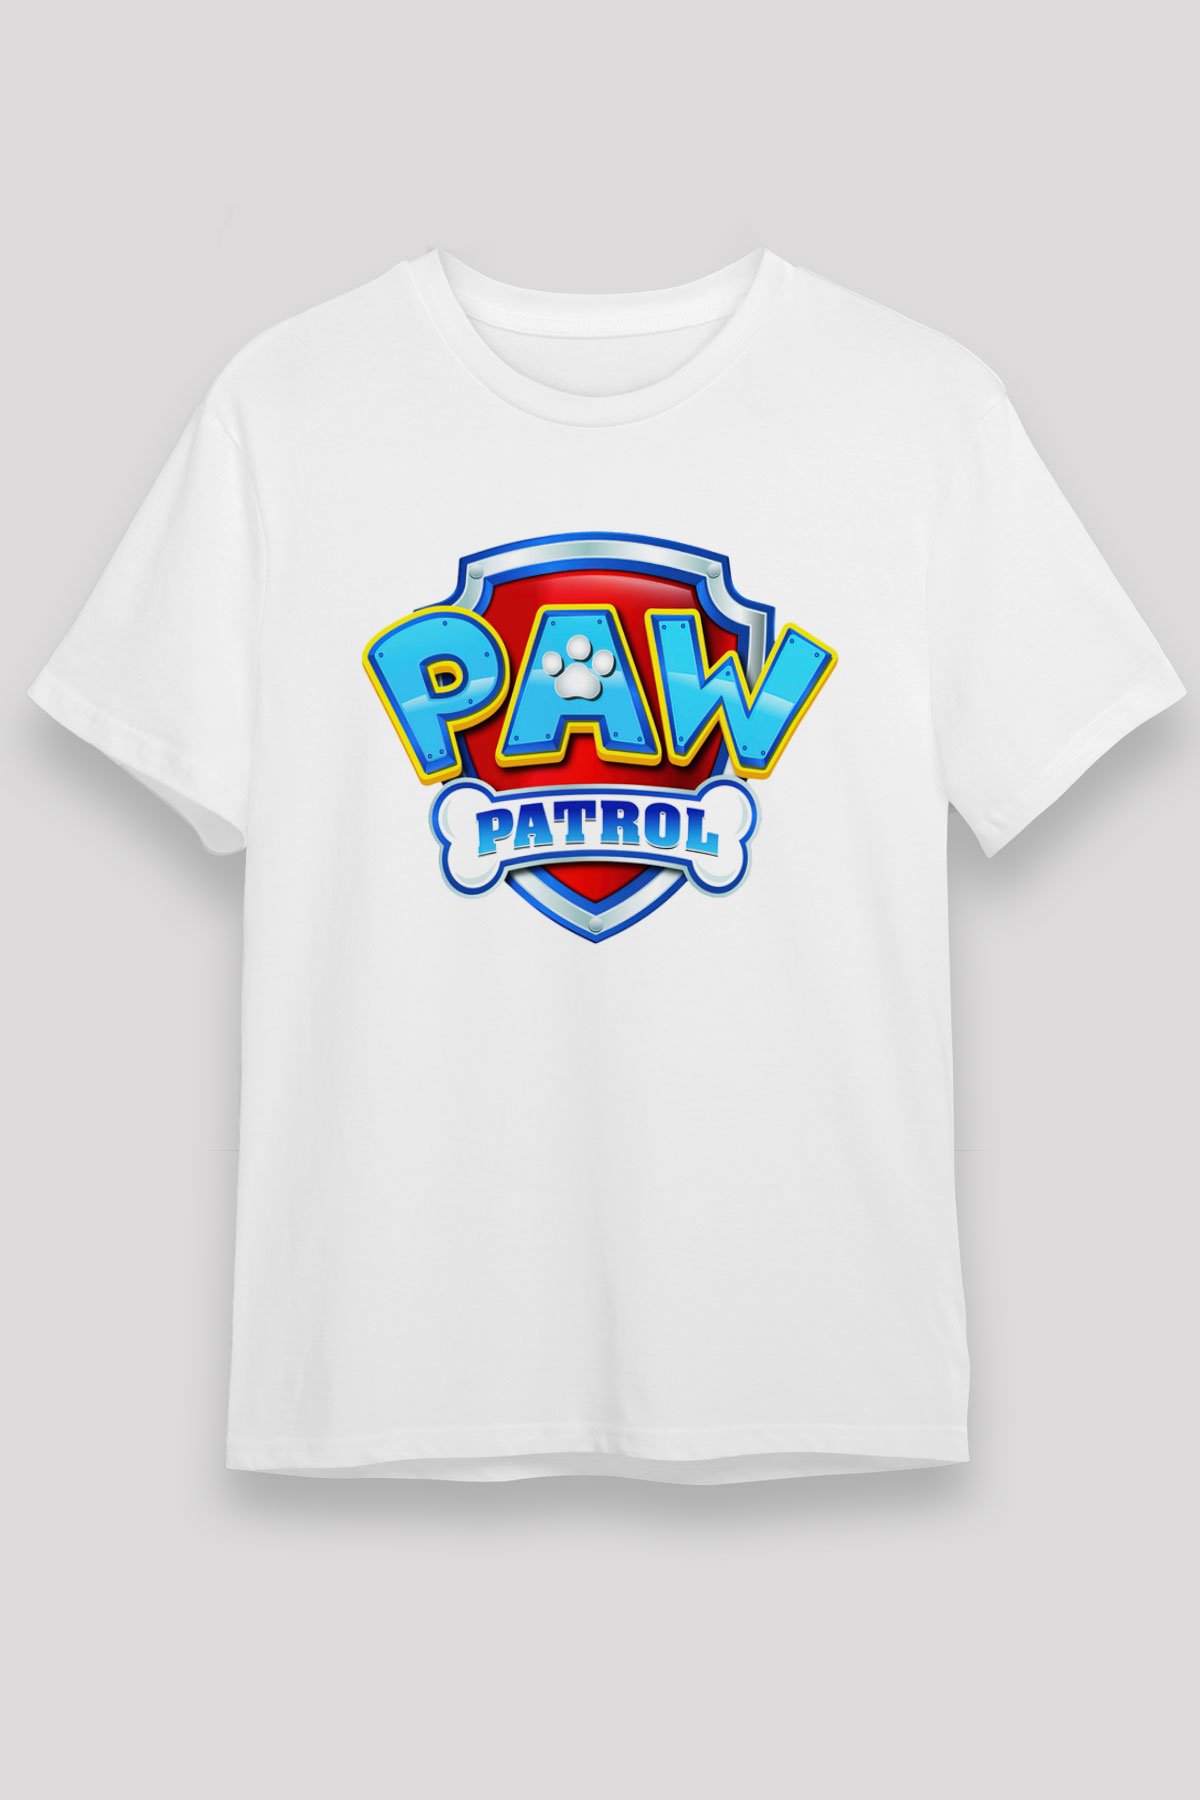 Paw Patrol Beyaz Unisex Tişört T-Shirt